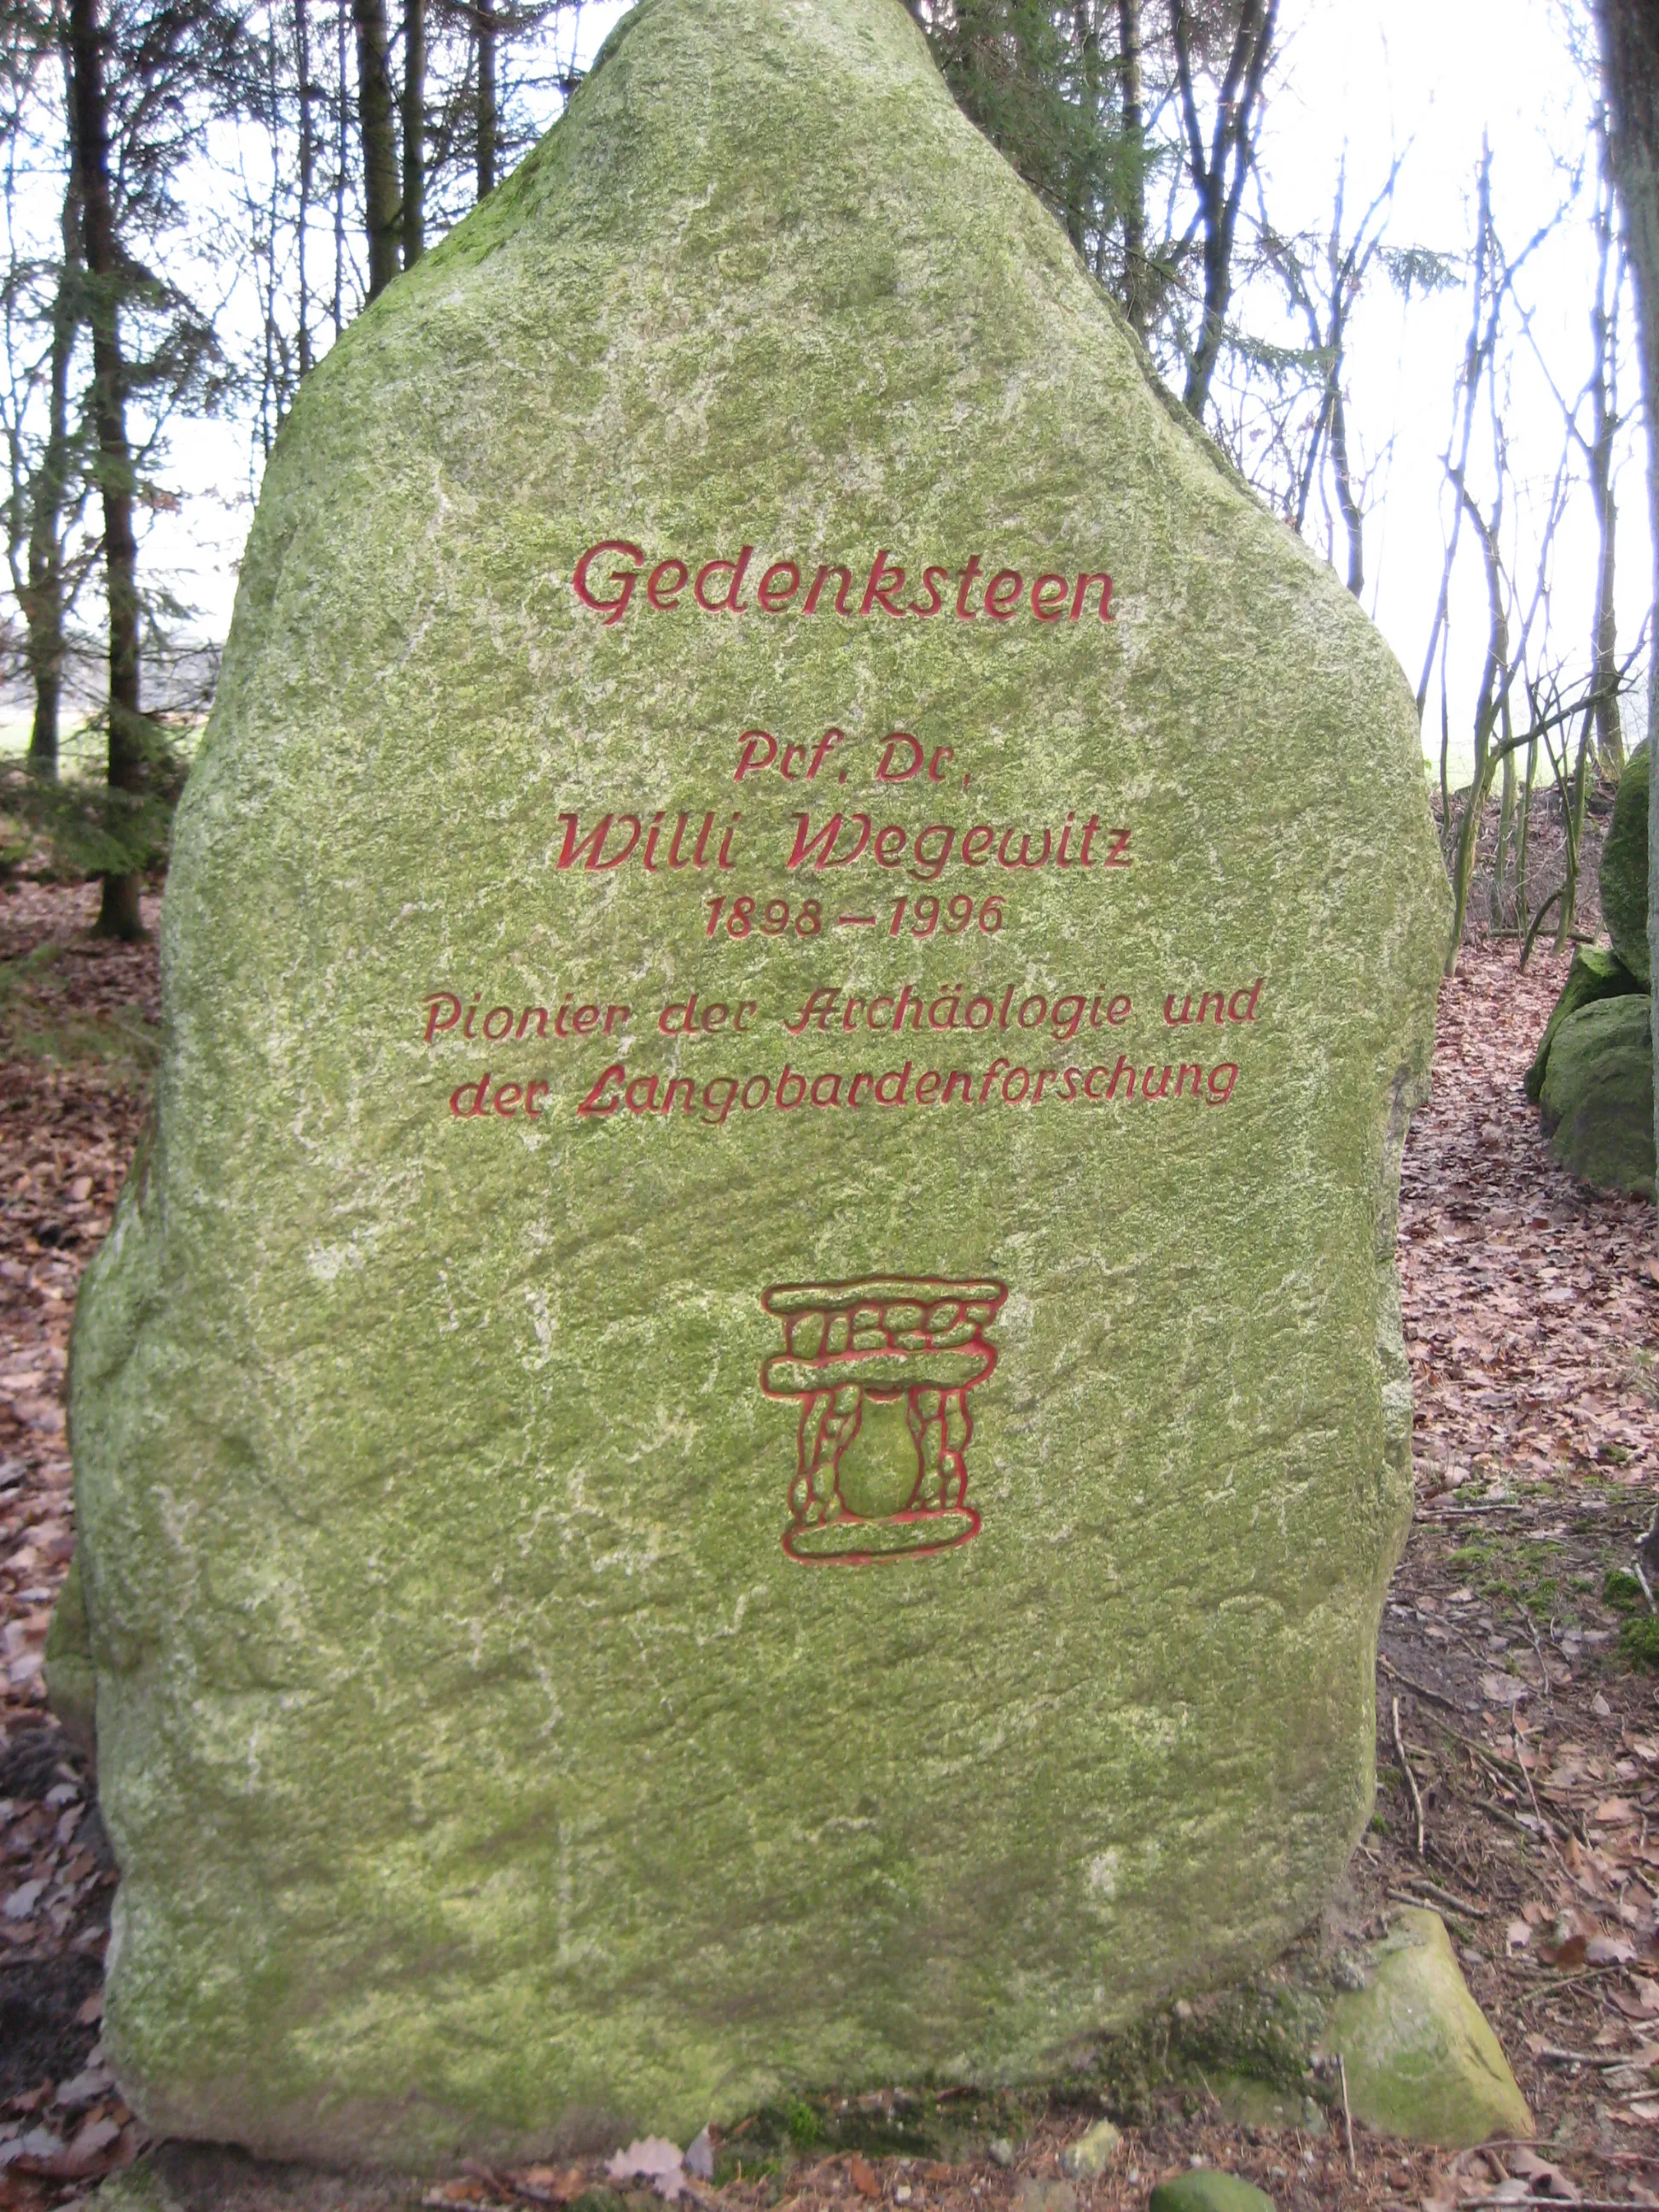 Photo showing: Gedenkstein für de:Willi Wegewitz in Ottendorf, Ortsteil von Ahlerstedt, Samtgemeinde Harsefeld